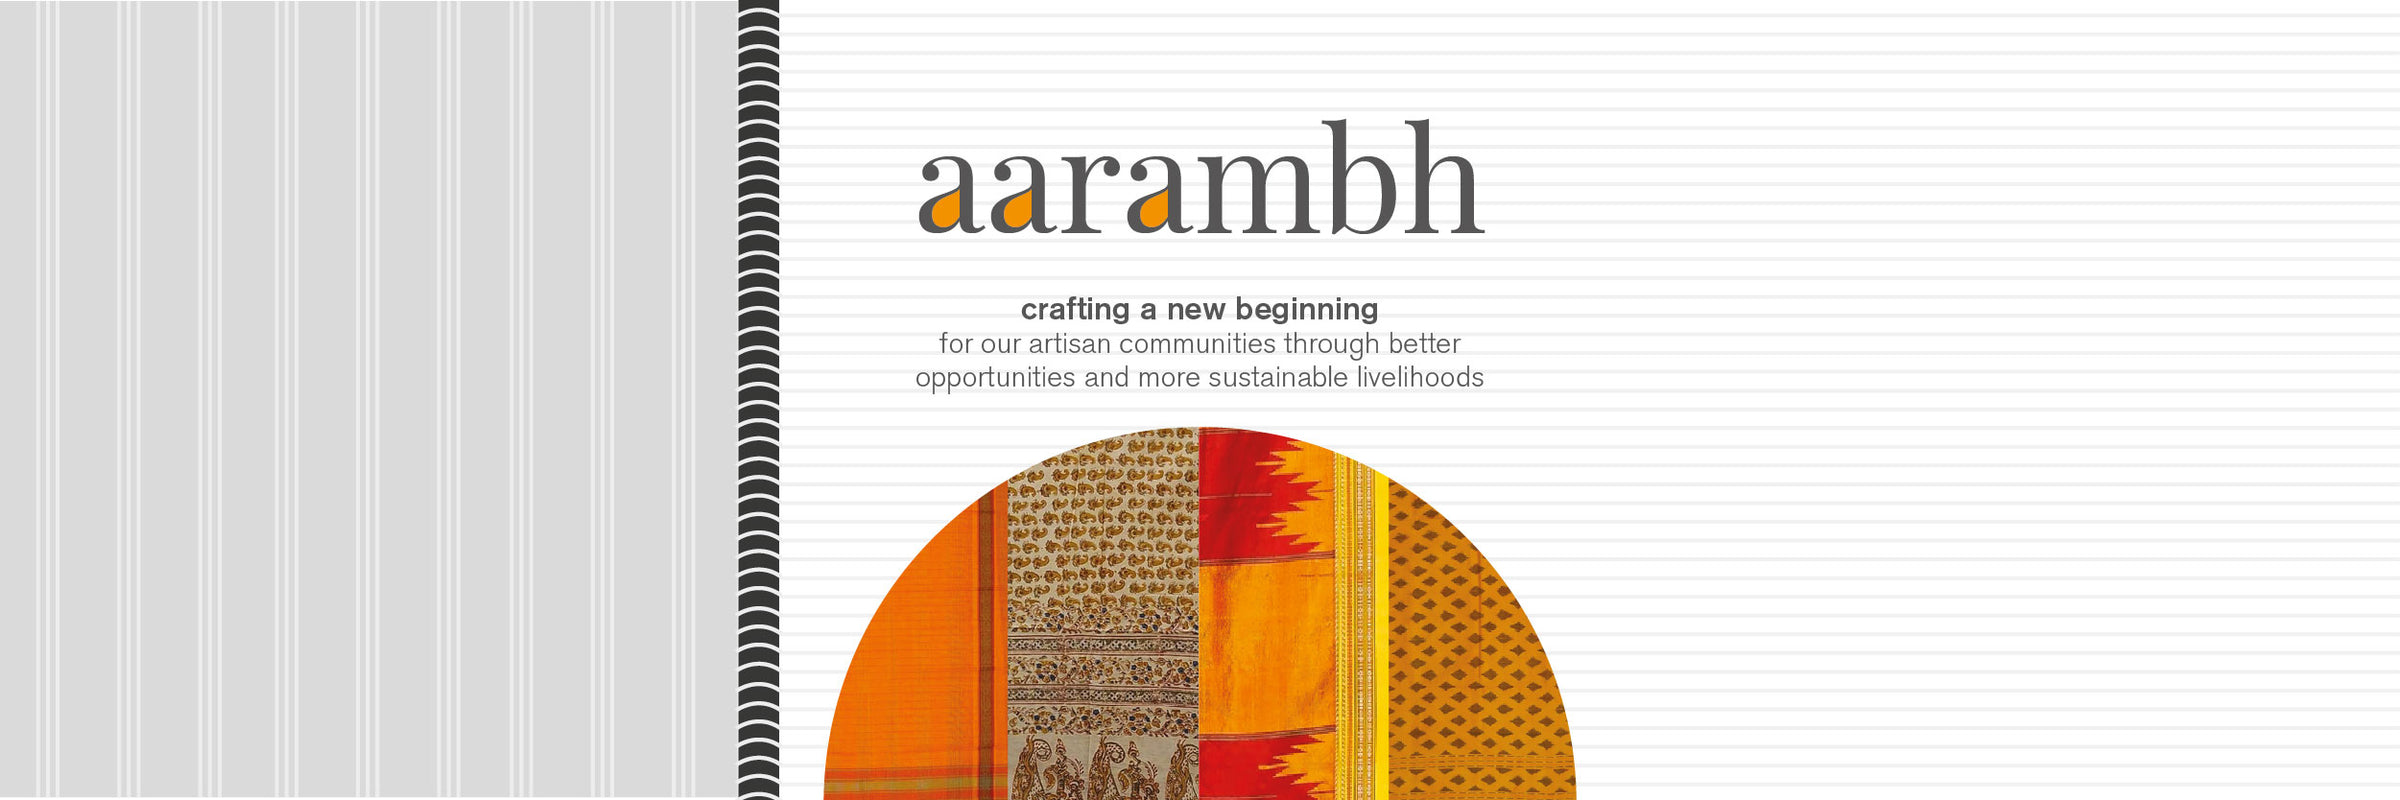 Aarambh - A new beginning